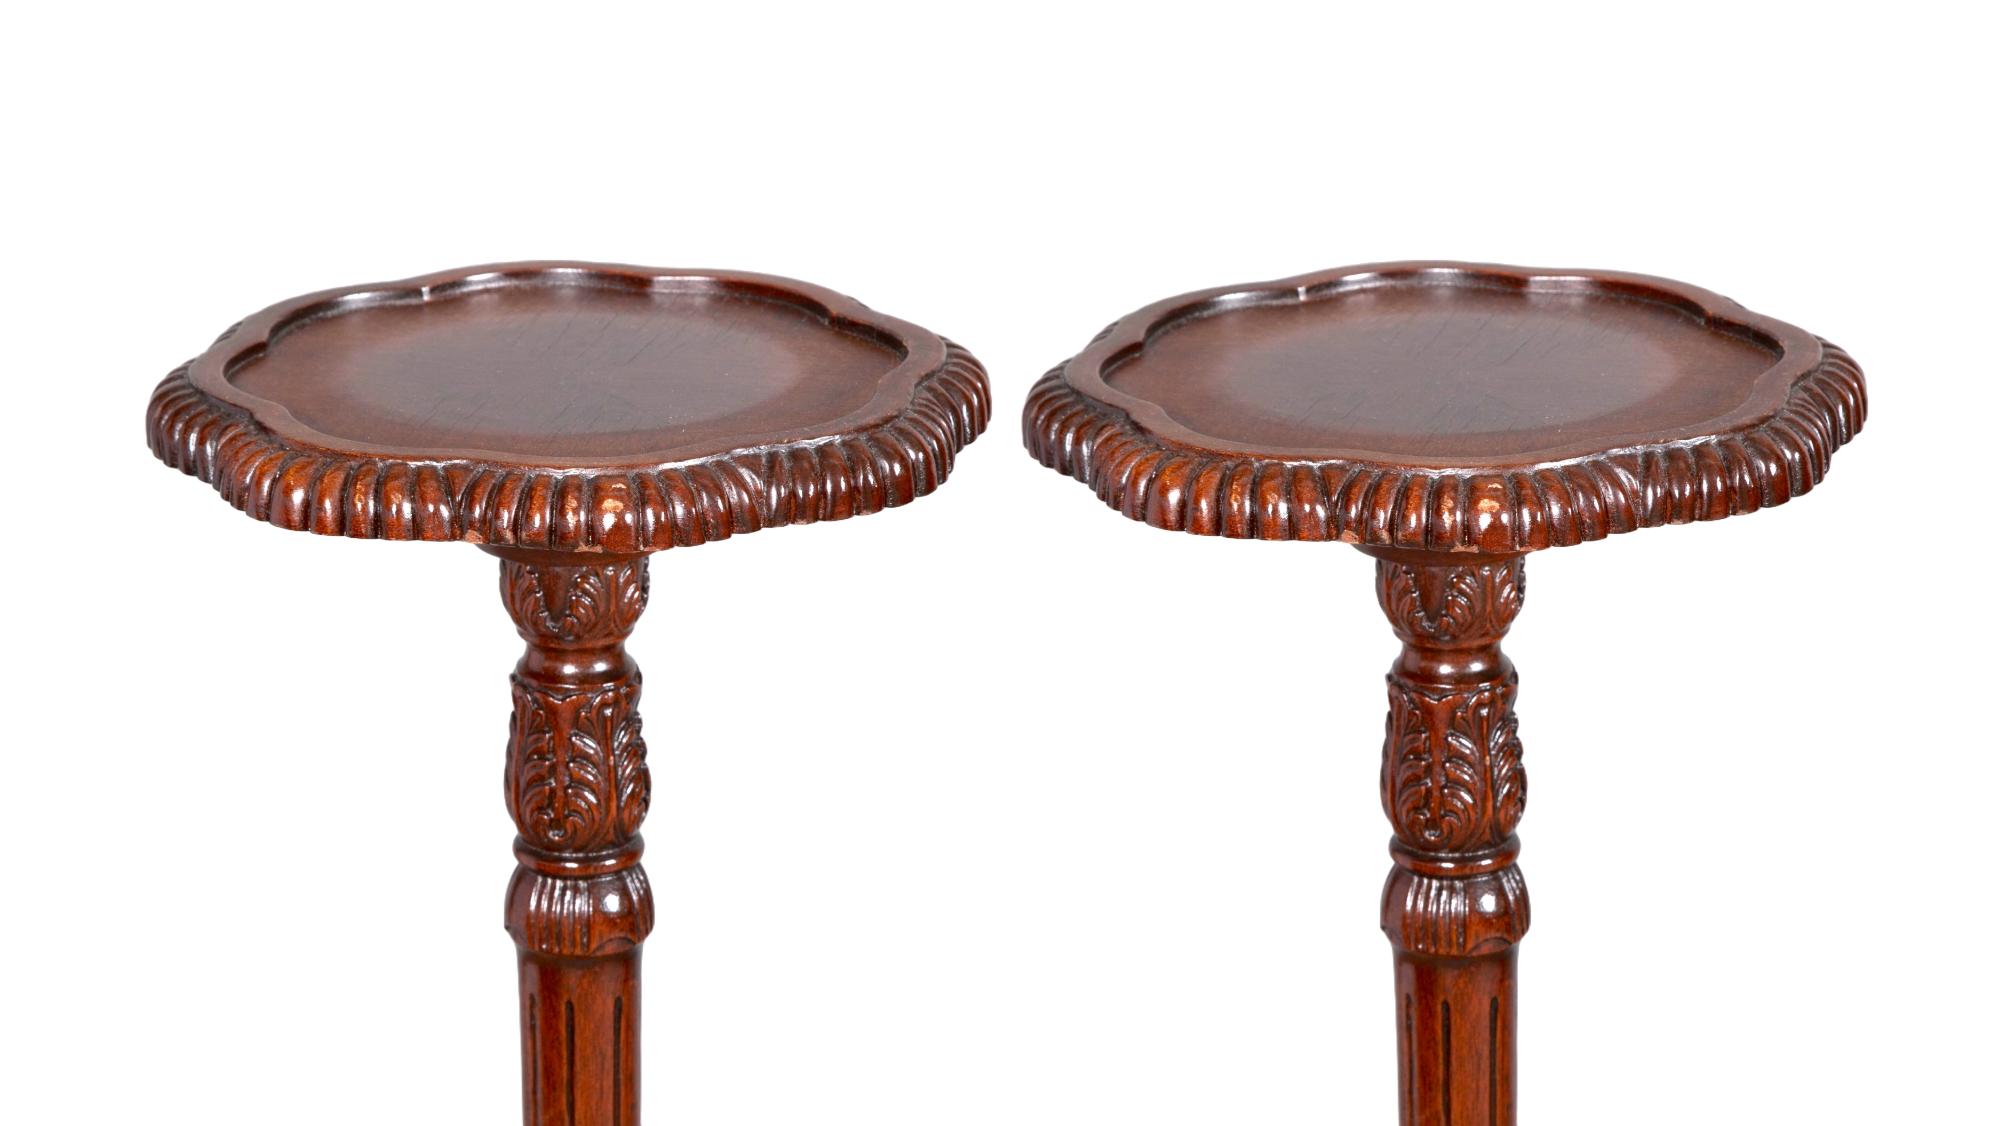 Tauchen Sie Ihren Raum in die zeitlose Eleganz des frühen 19. Jahrhunderts mit diesem exquisiten Paar englischer Mahagoni-Dreibein-Kerzenständer im Chippendale-Stil. Jeder Ständer ist ein Meisterwerk der Handwerkskunst, mit einer handgeschnitzten